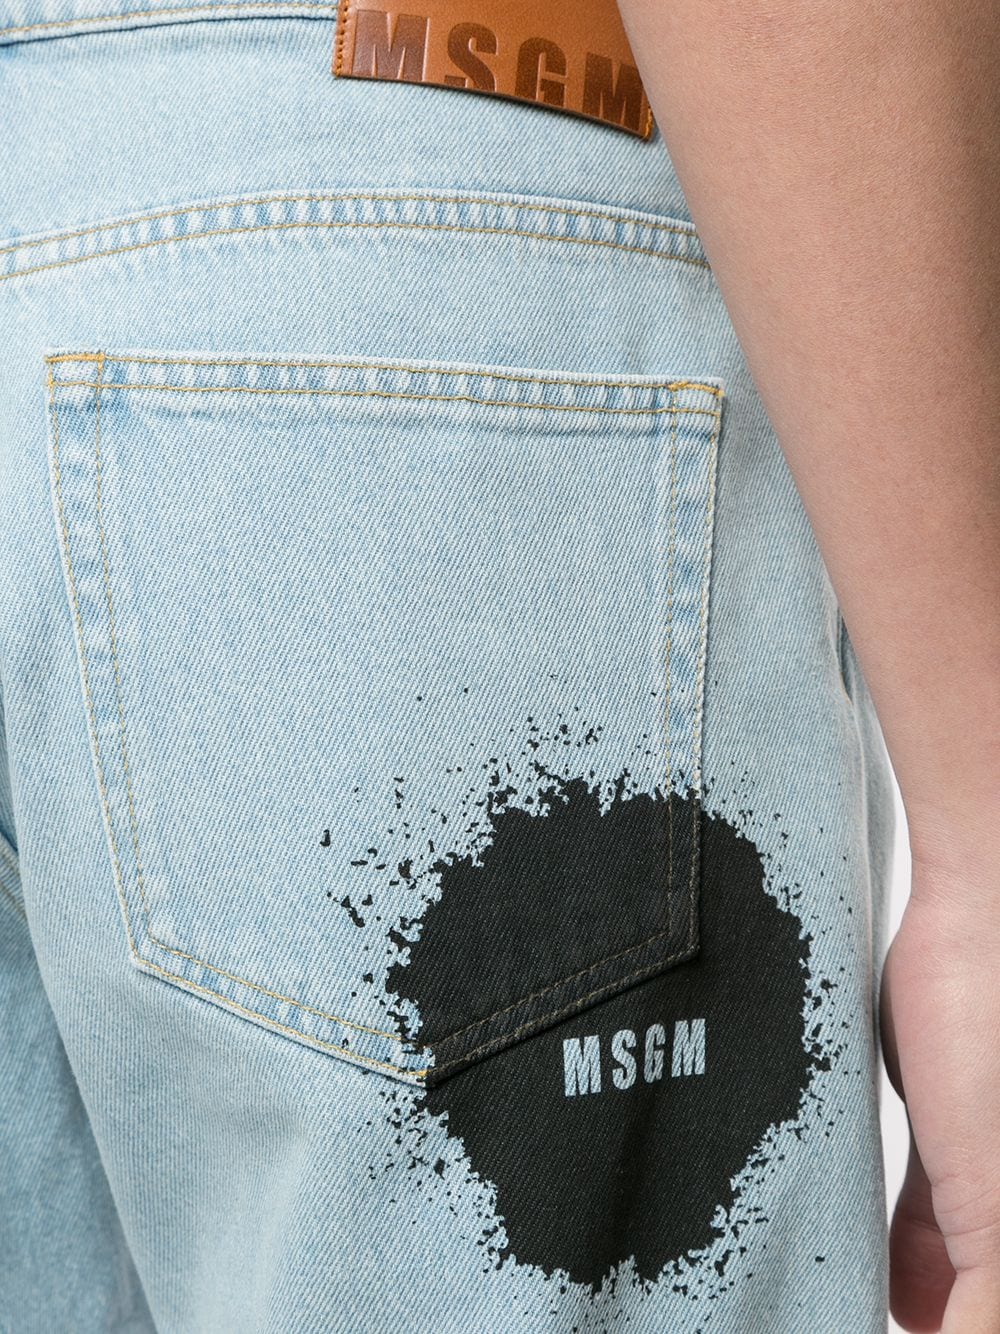 фото Msgm джинсы с завышенной талией